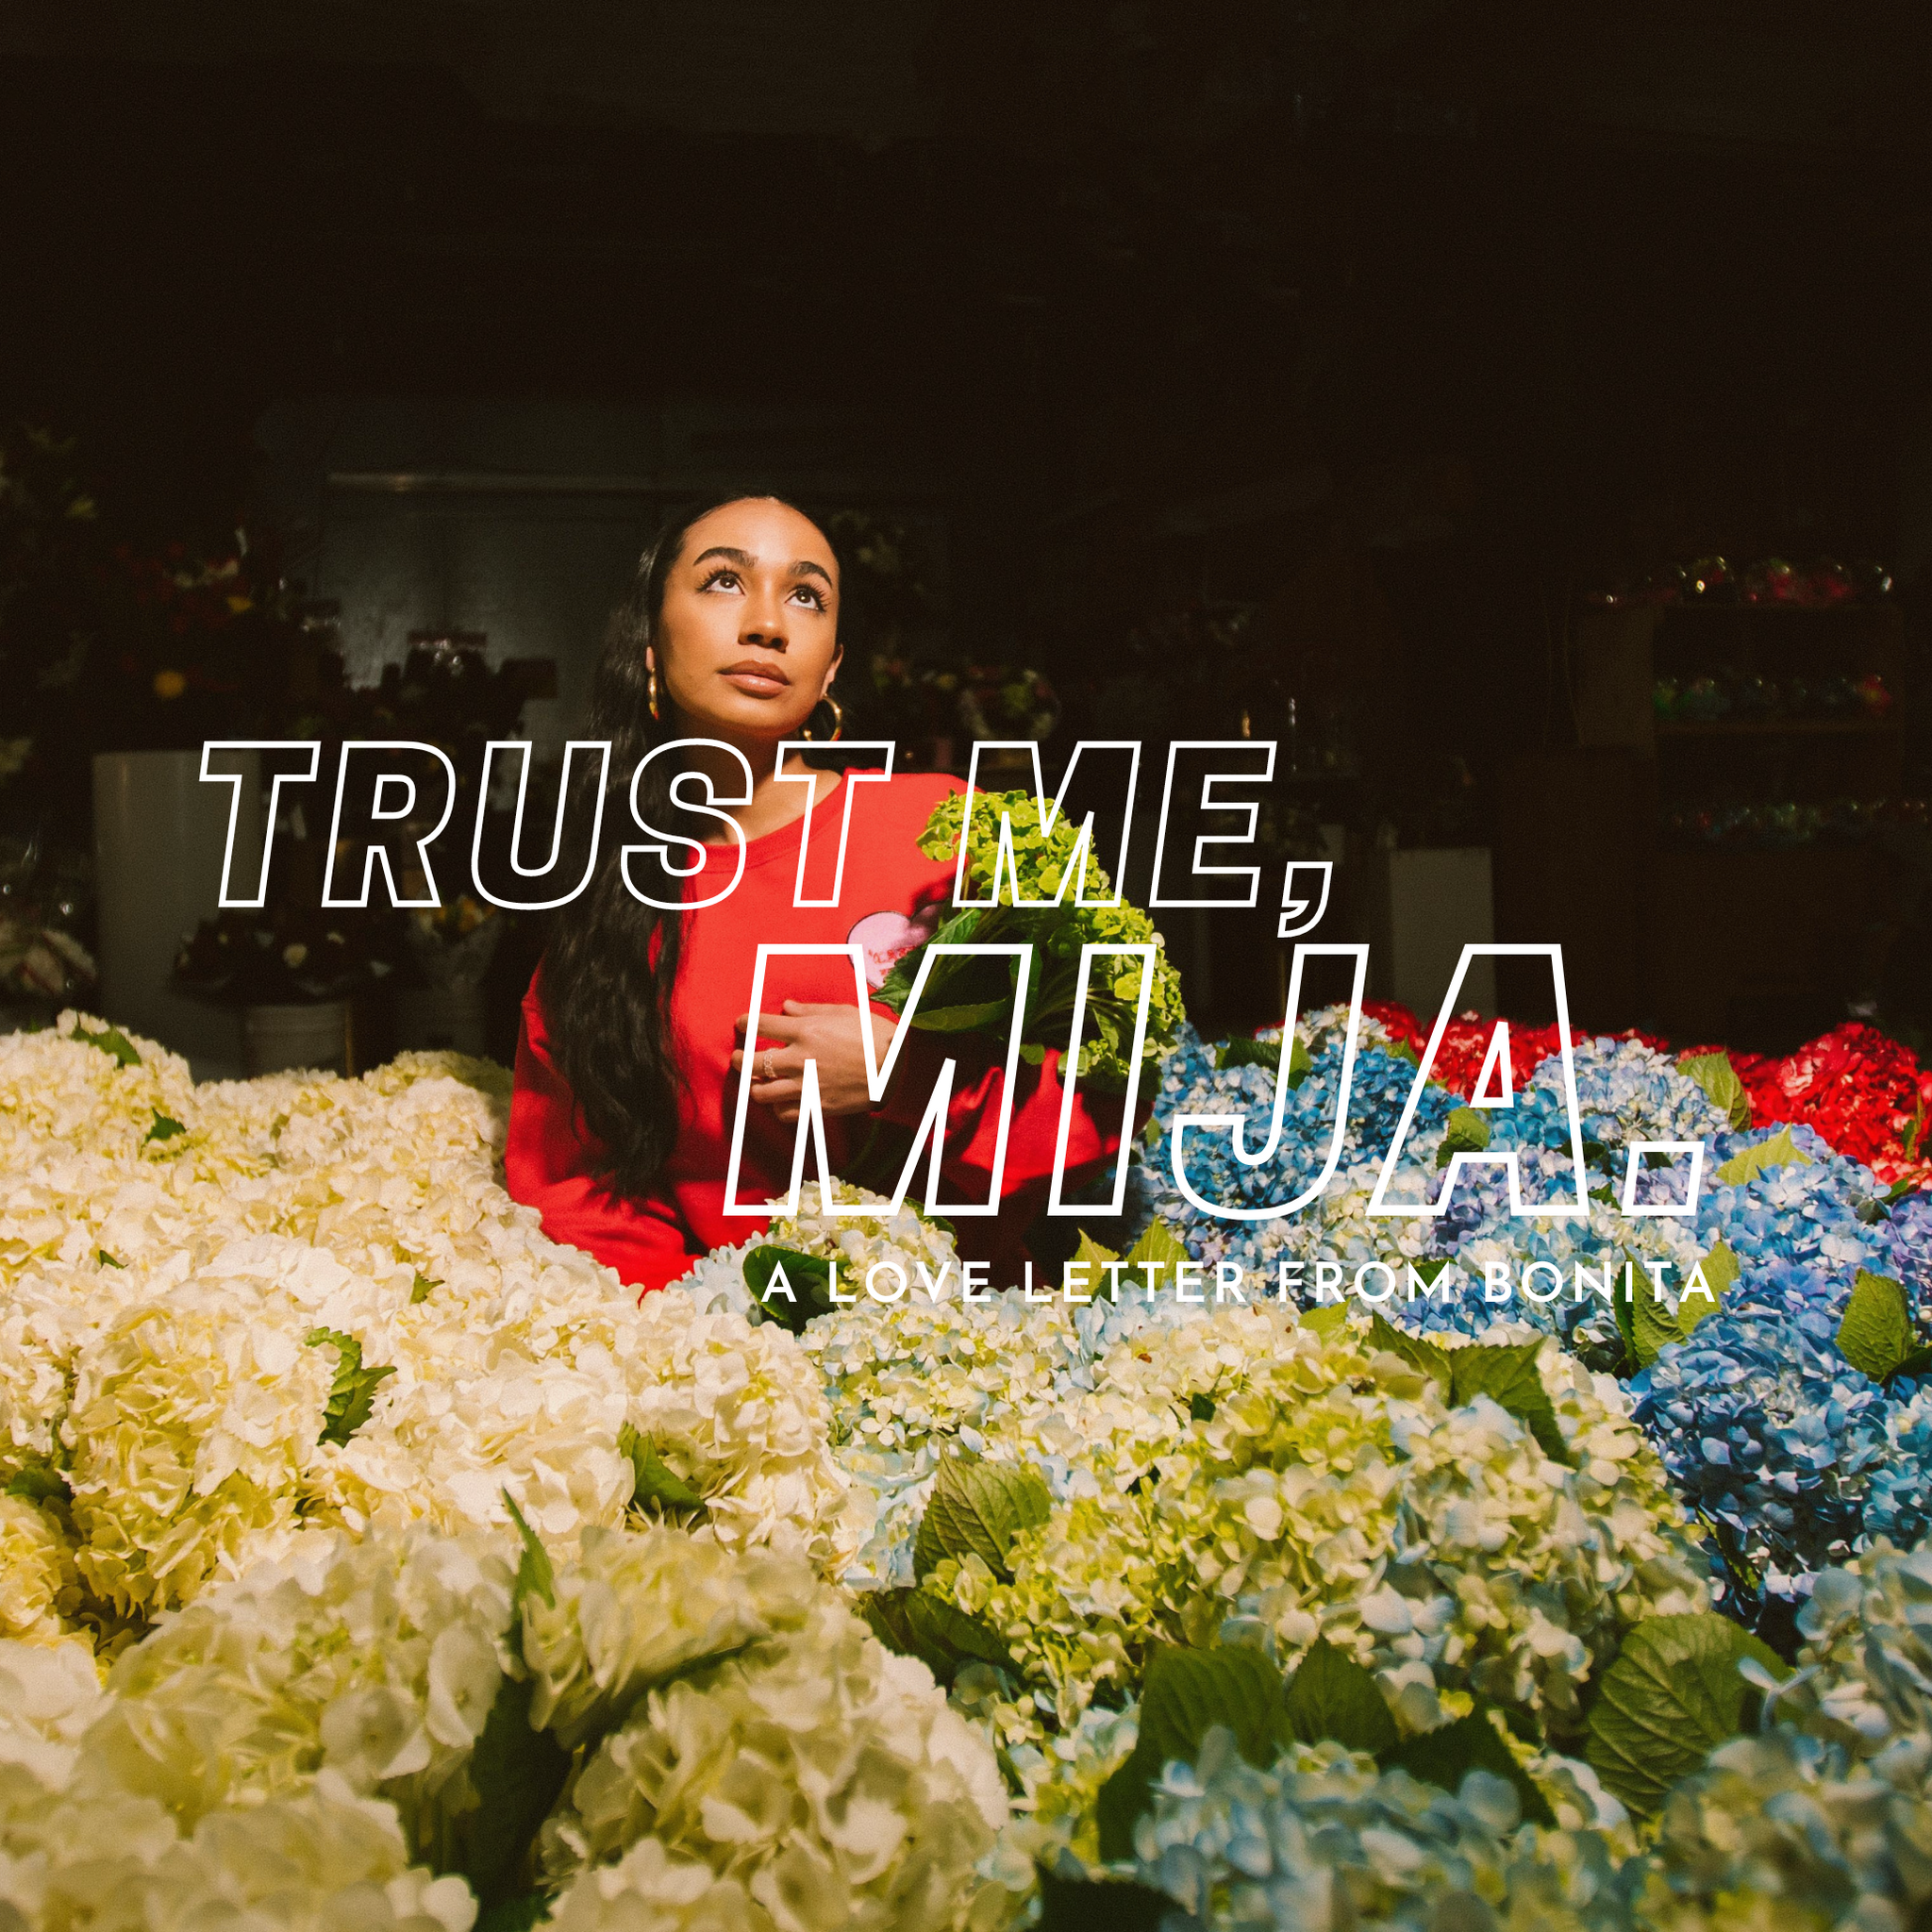 TRUST ME, MIJA: A LOVE LETTER